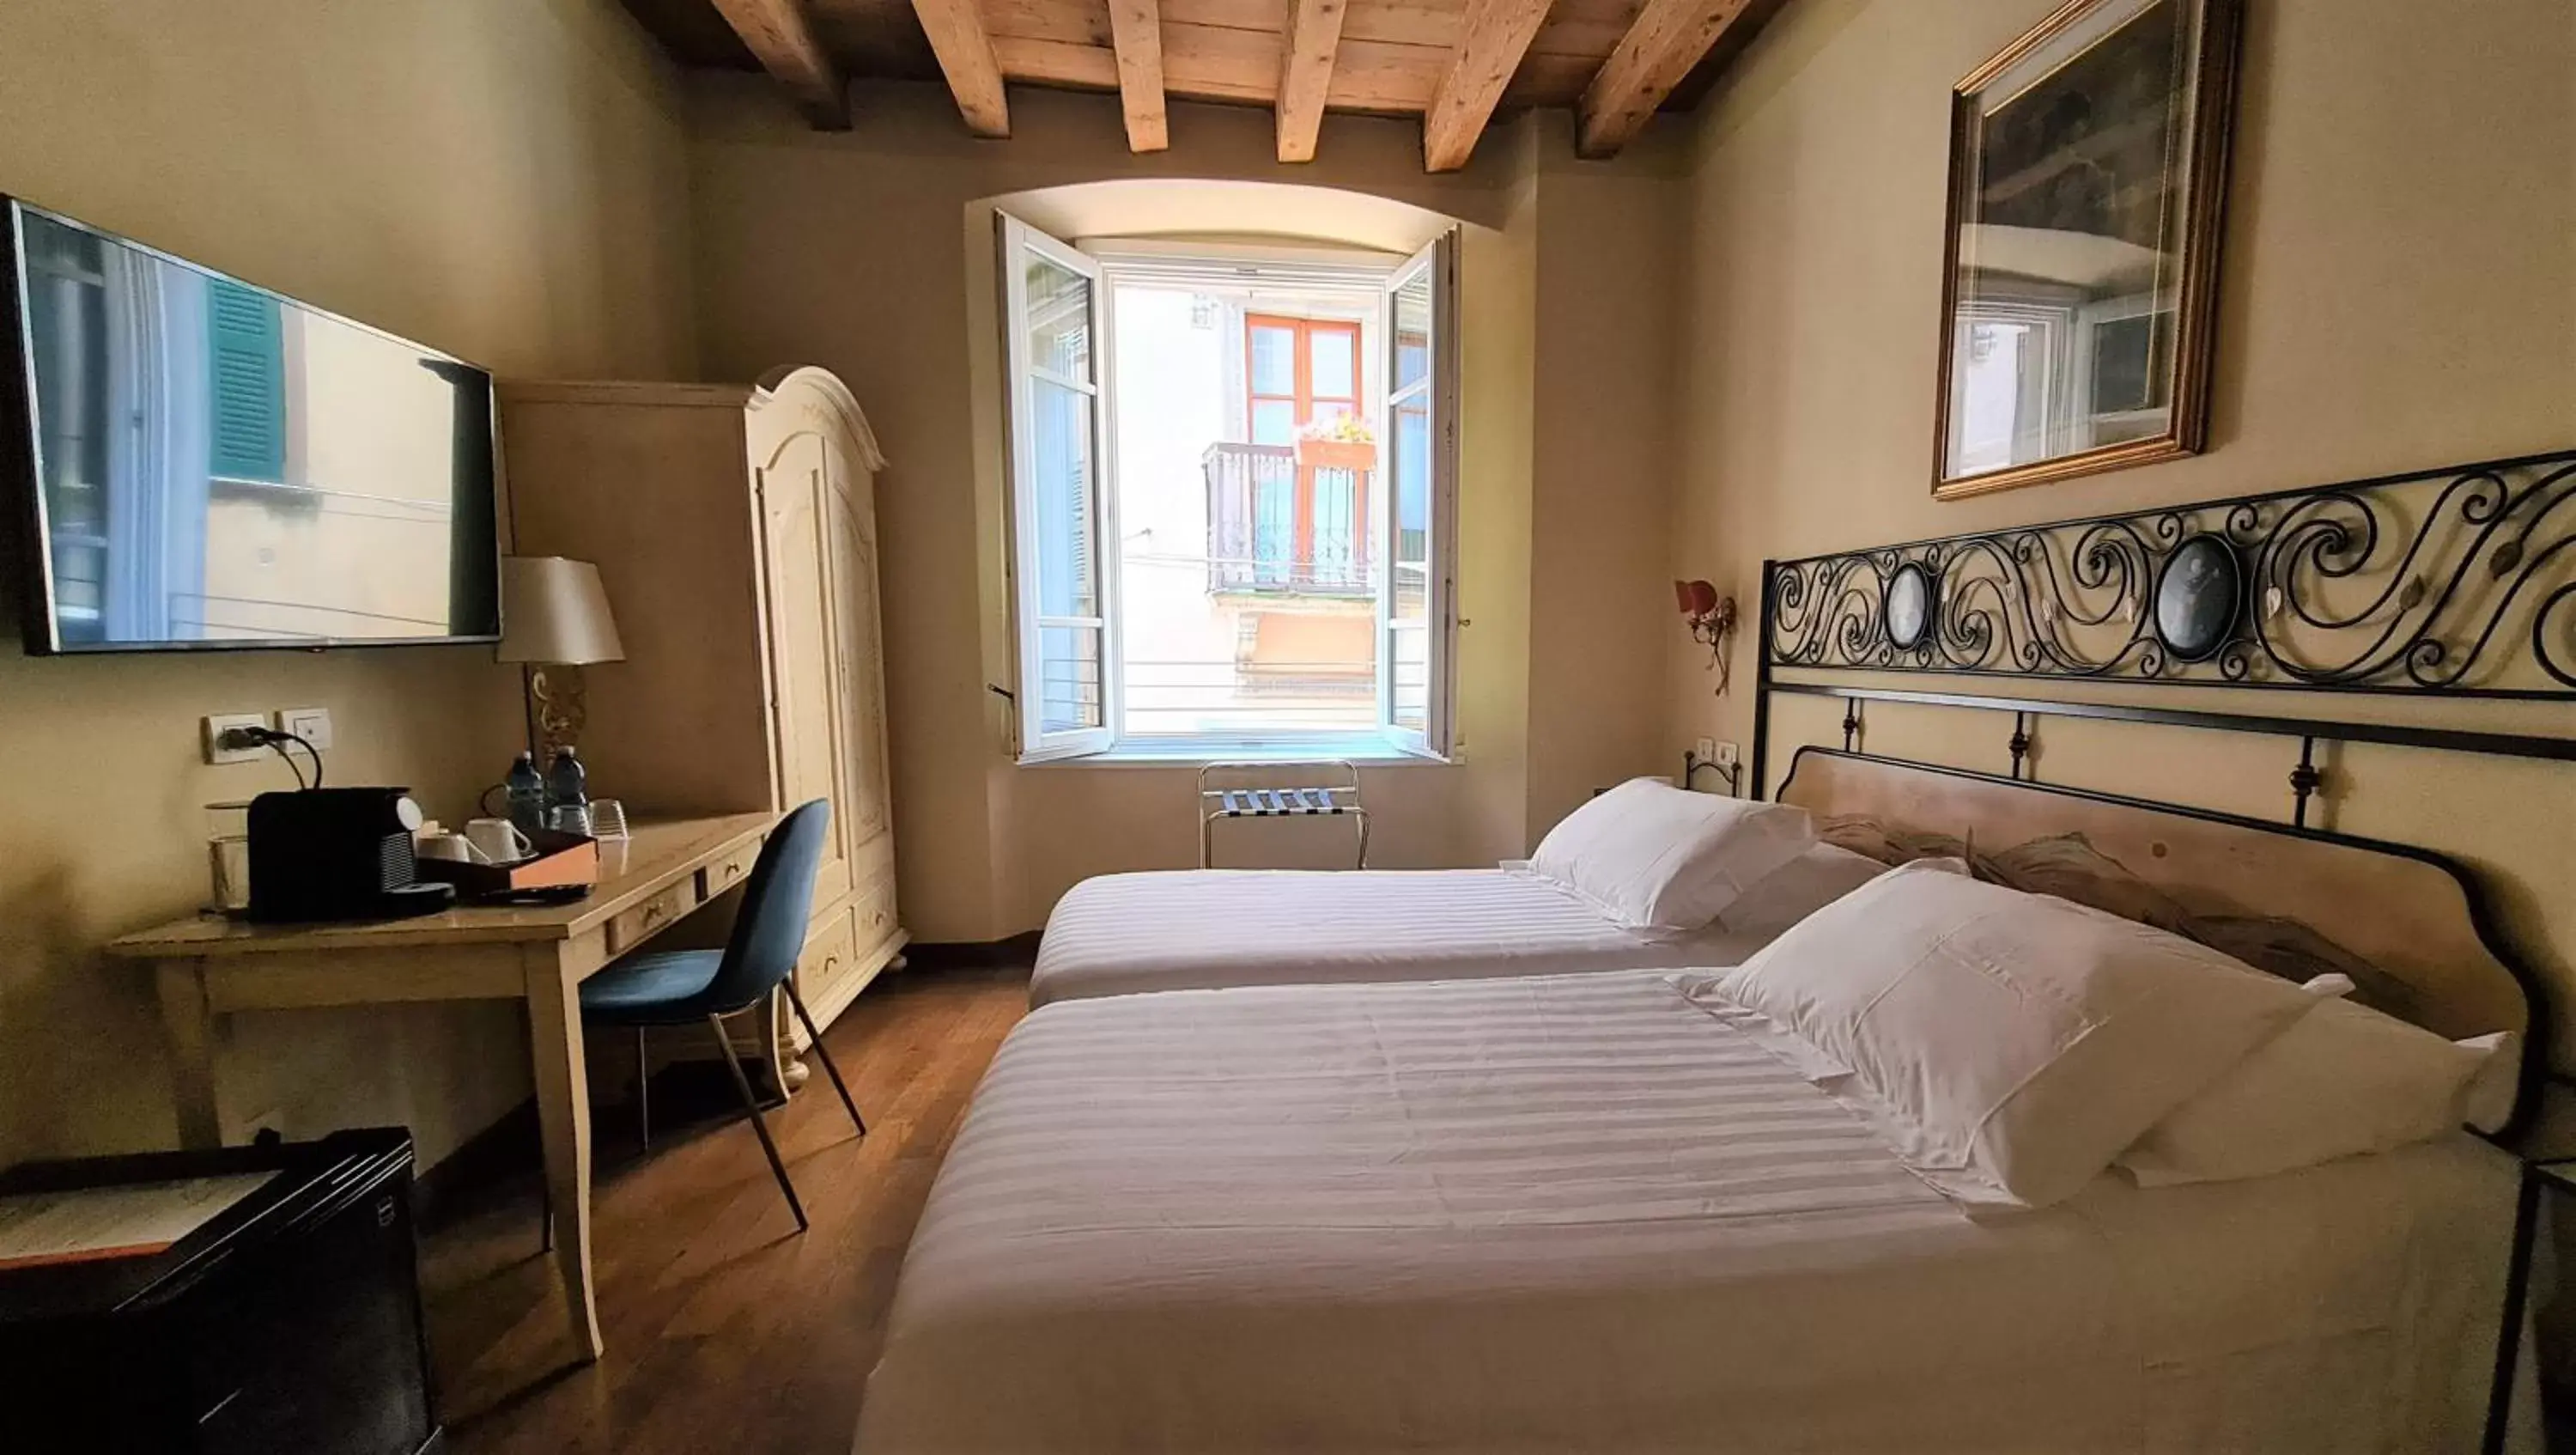 Bedroom in Hotel Piazza Vecchia